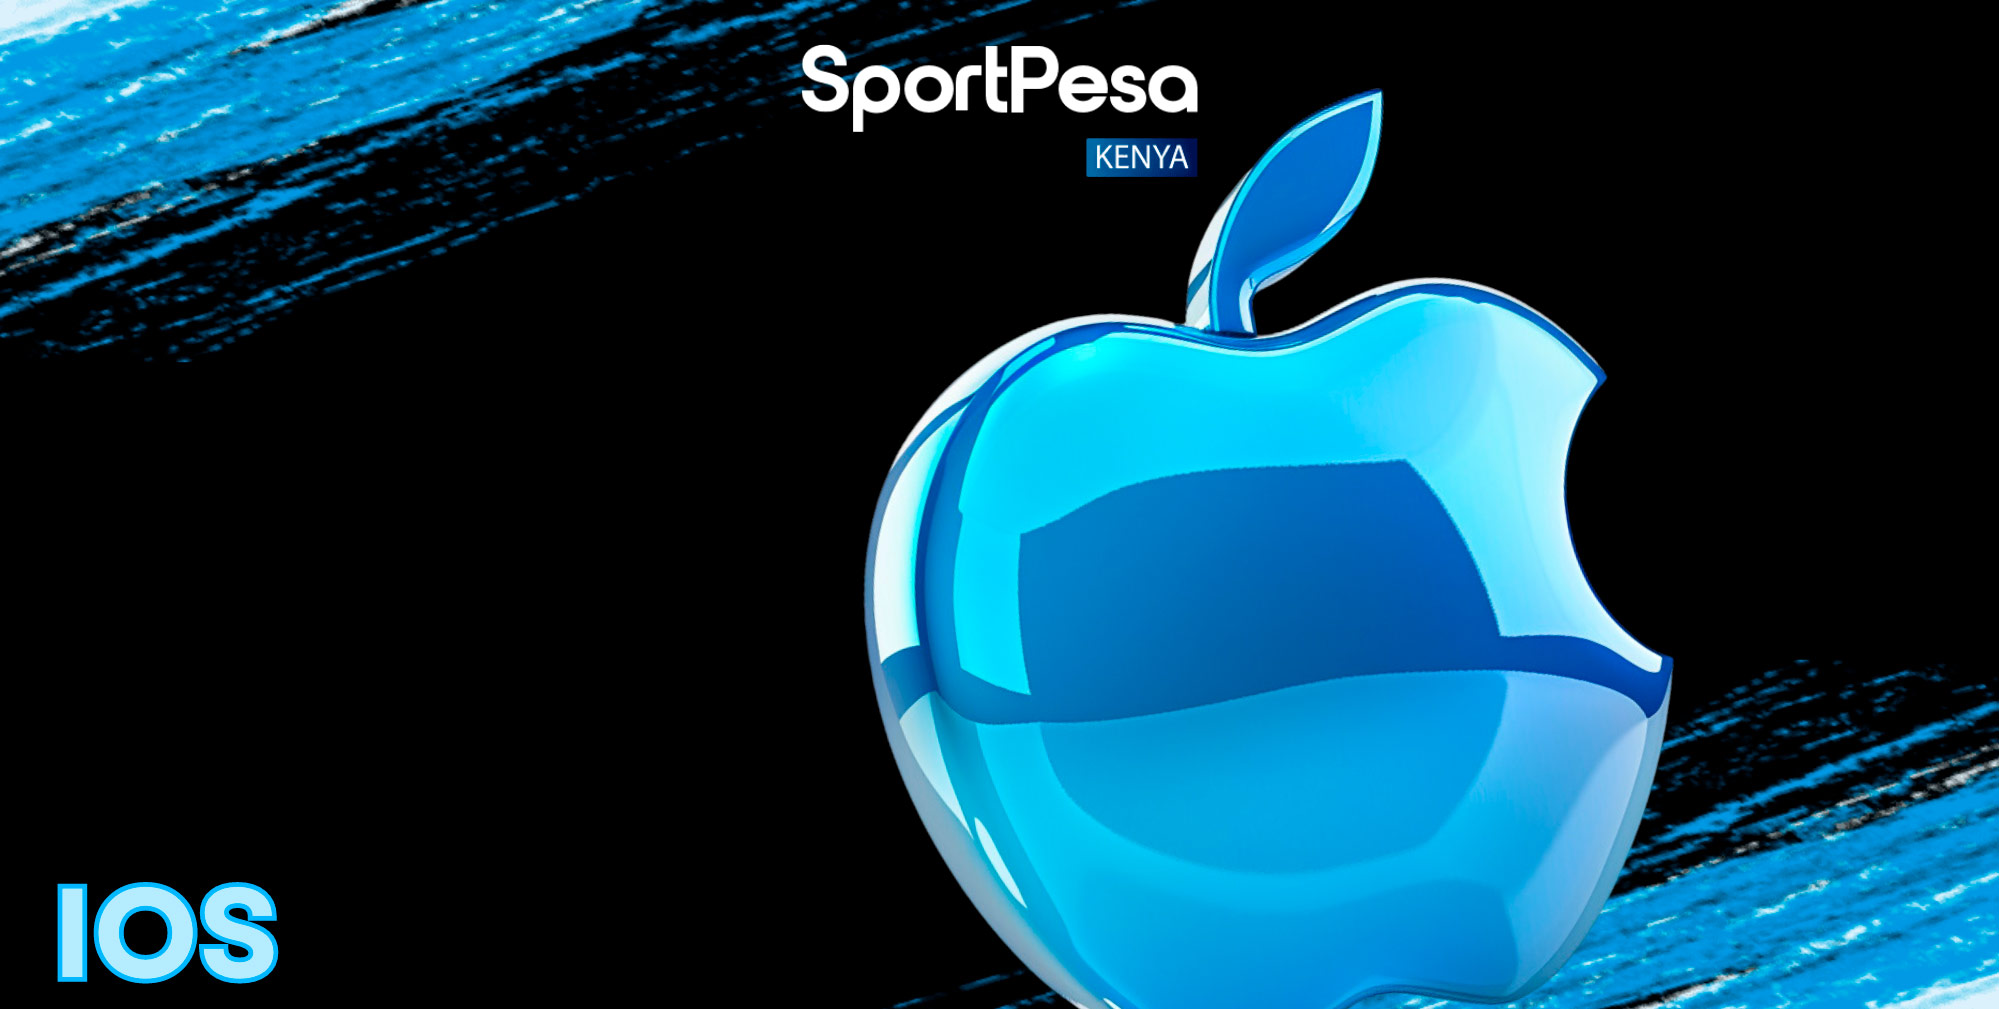 The Sportpesa app for ios